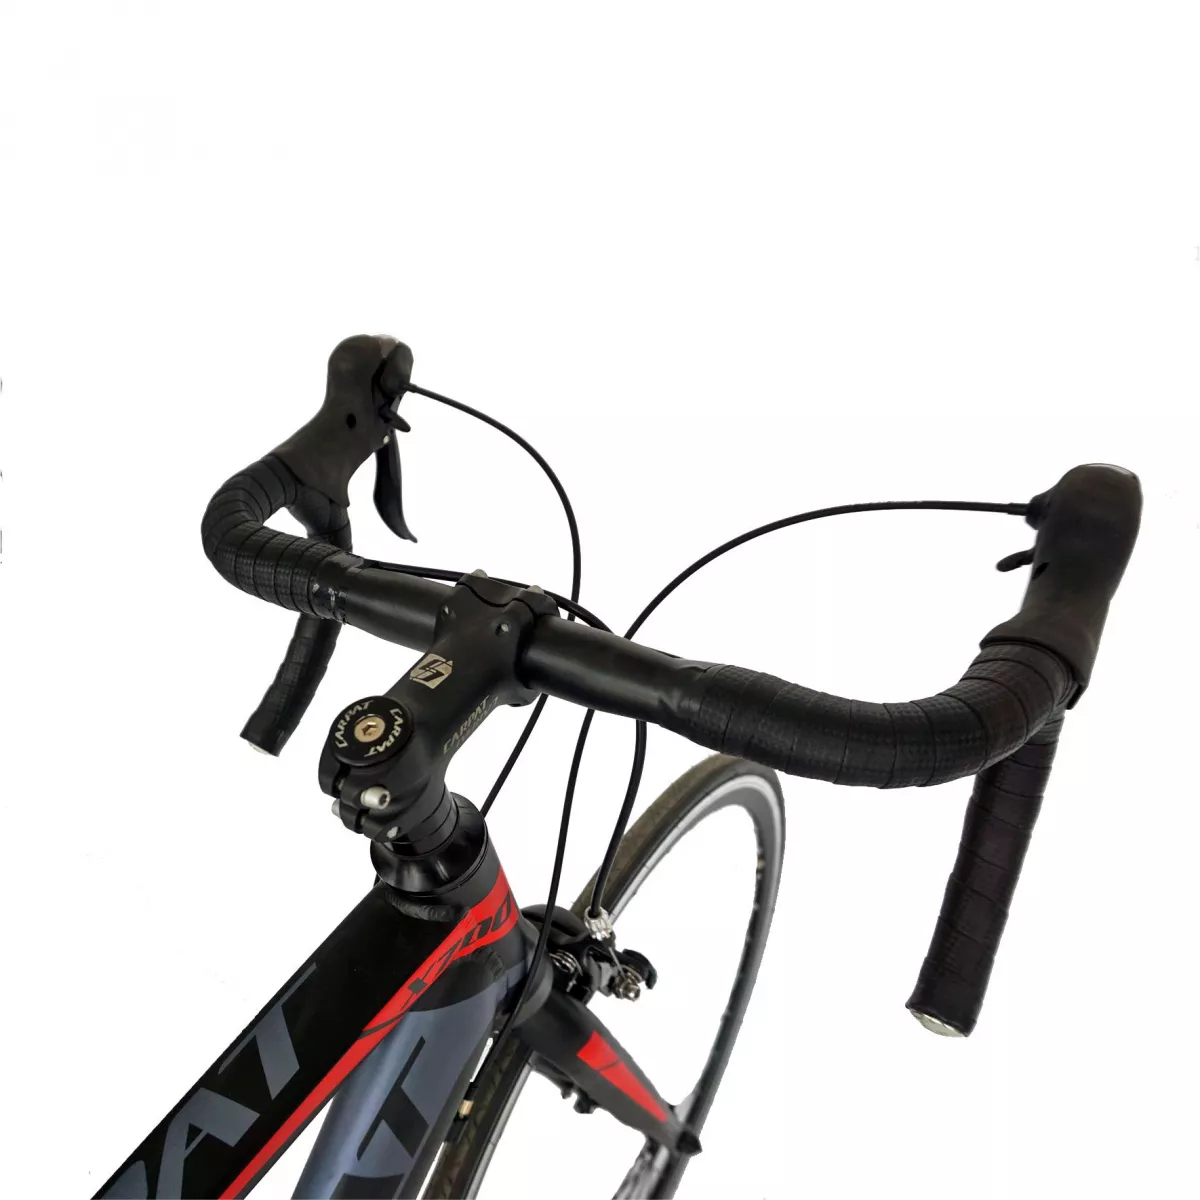 Bicicleta Road  28" CARPAT C2874C, cadru aluminiu, transmisie SHIMANO 14 viteze, culoare negru/rosu - RESIGILATA